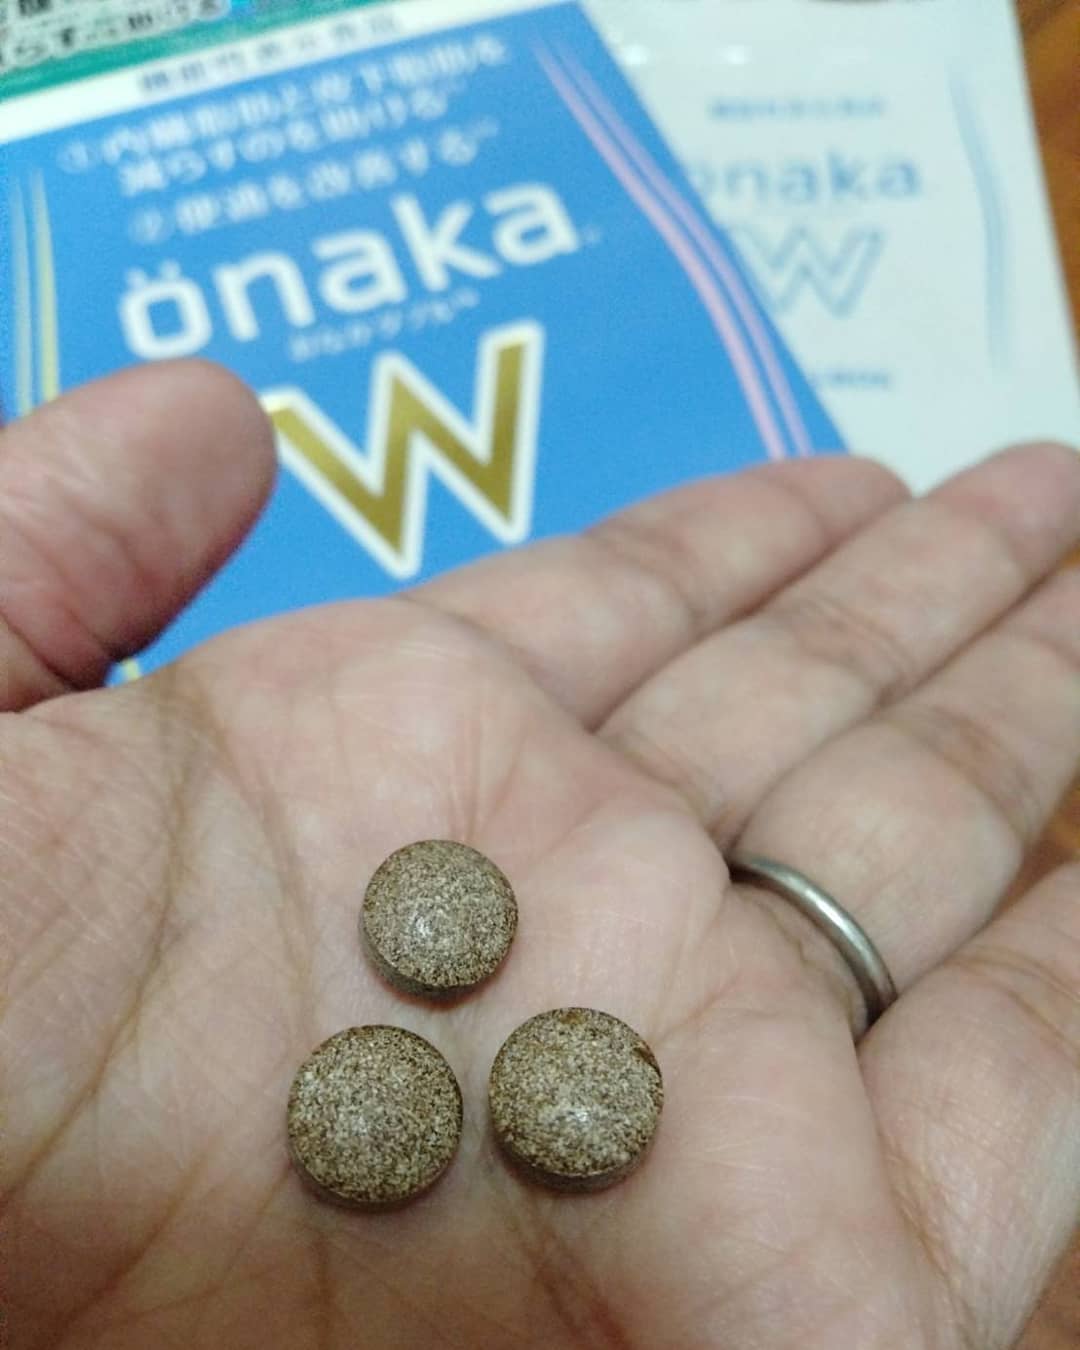 口コミ投稿：@pillbox_japan 様のサプリ「onakaW」お試しさせて頂きました。味は、なんかお茶みた…